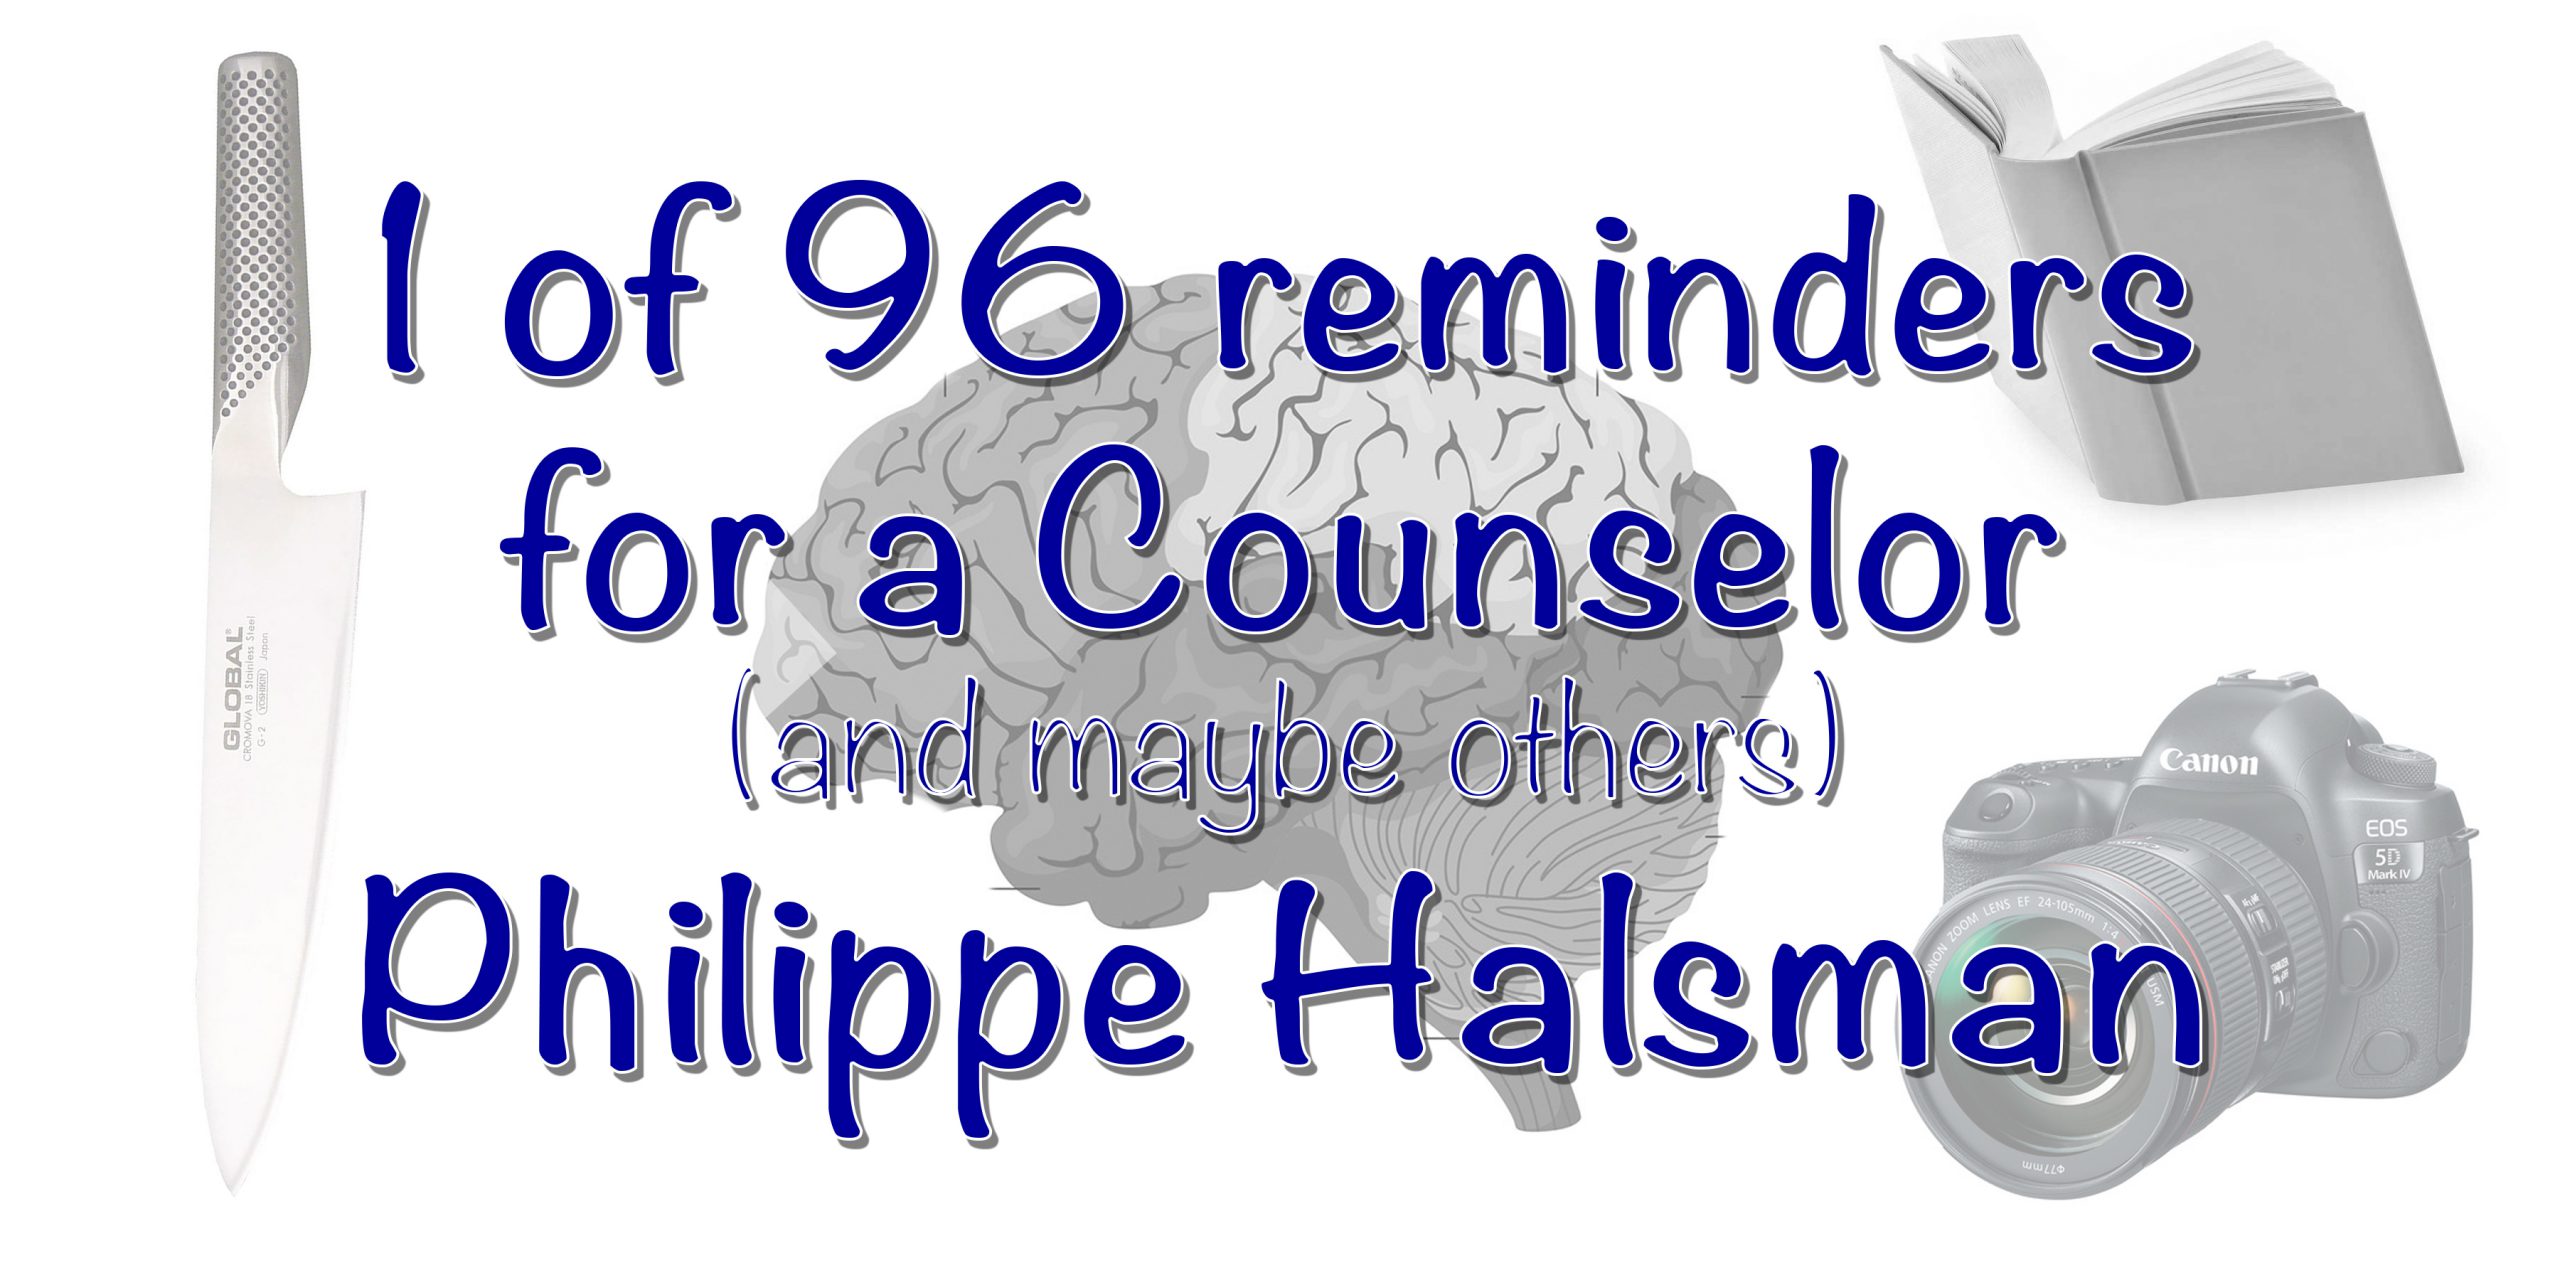 Philippe Halsman – Reminder 1 of 96